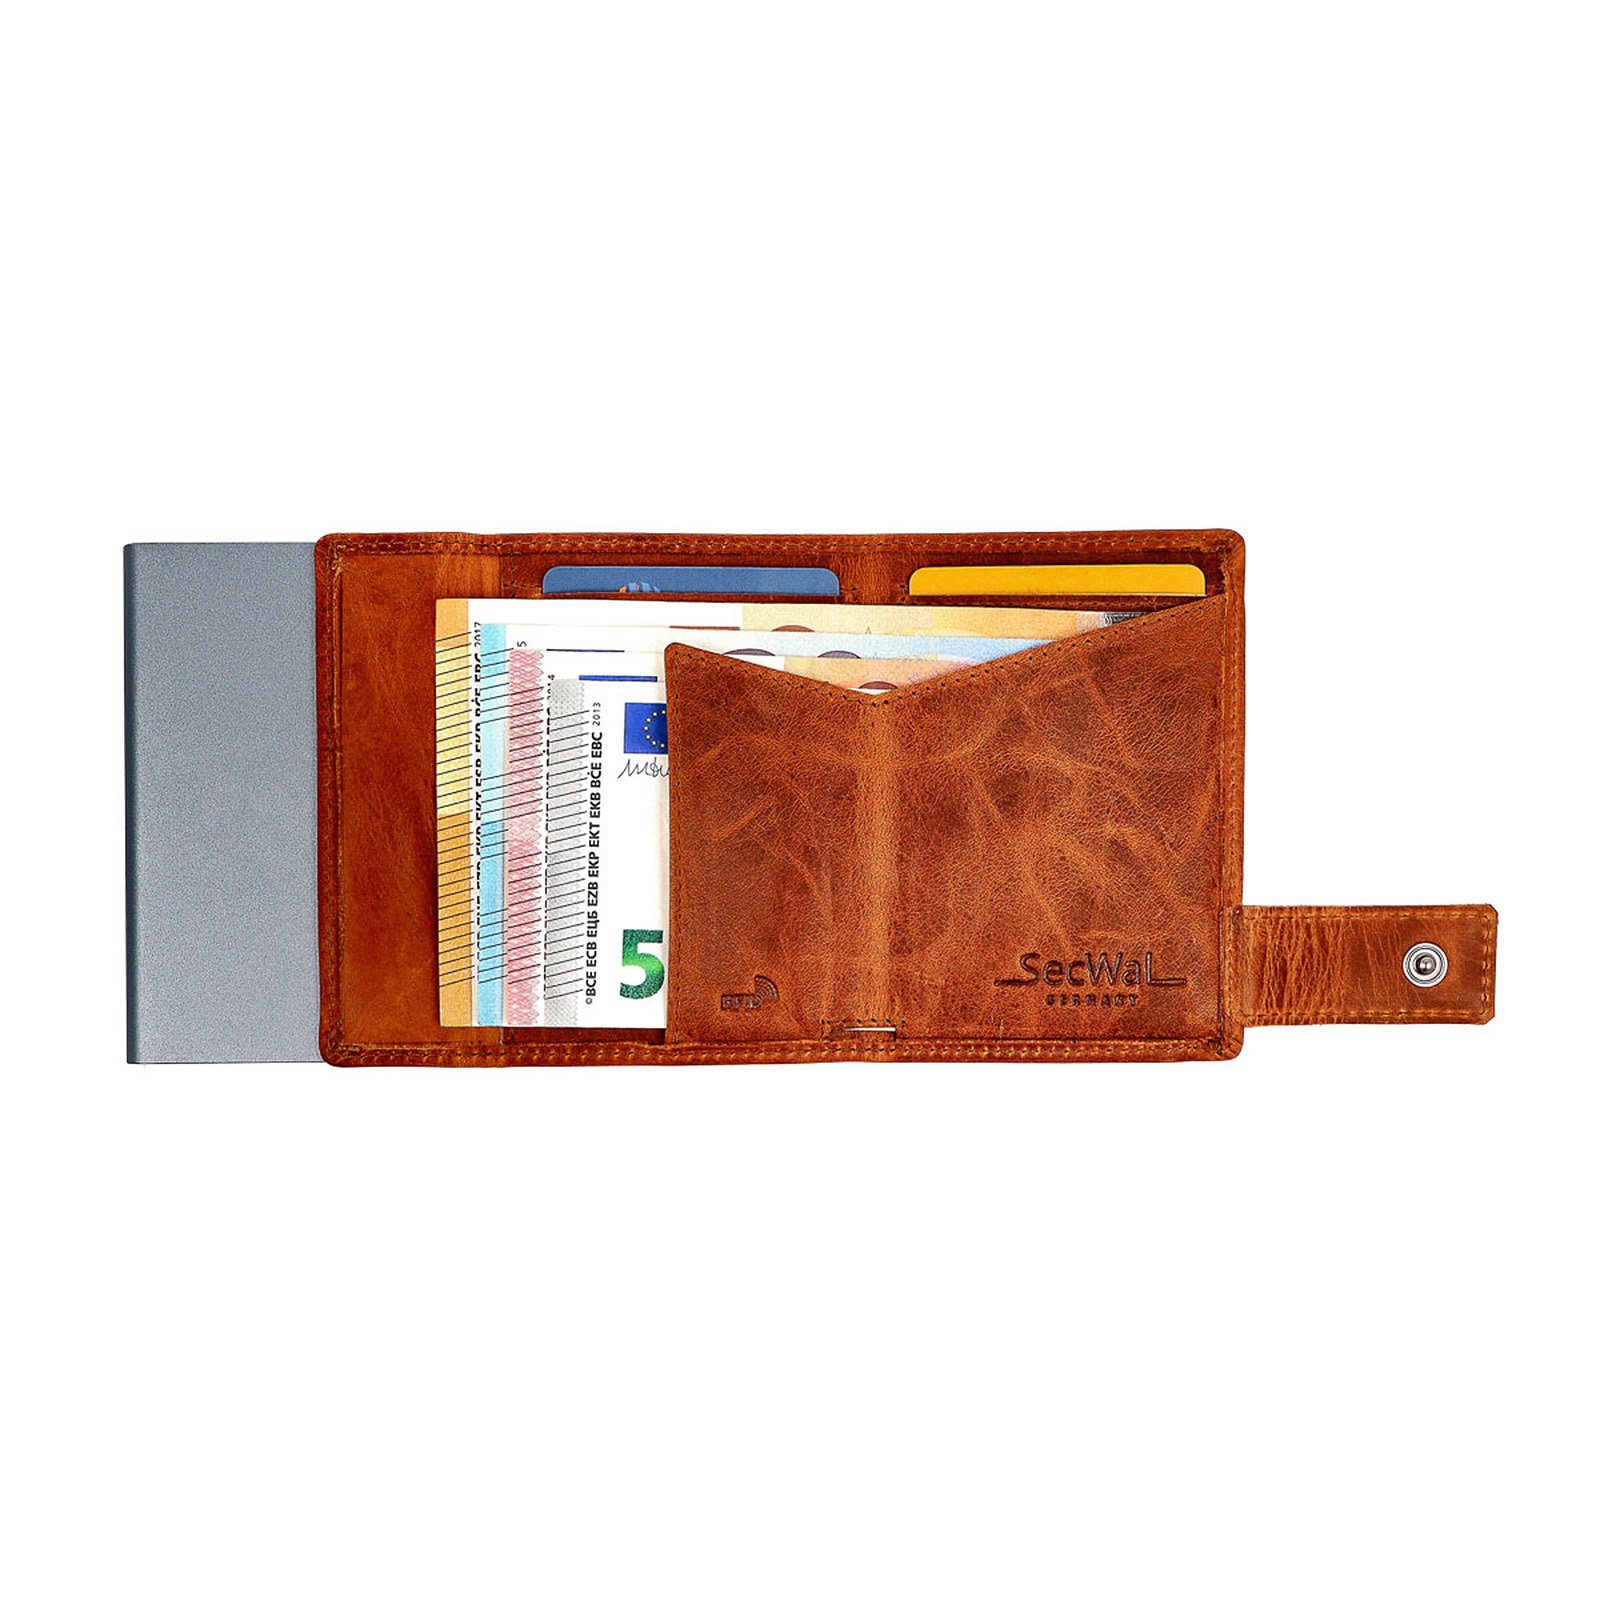 Kartenetui Geldbörse Schutz Portemonnaie Geldbörse mit RFID SecWal RFID SW1XL, Dallas Münzfach Leder